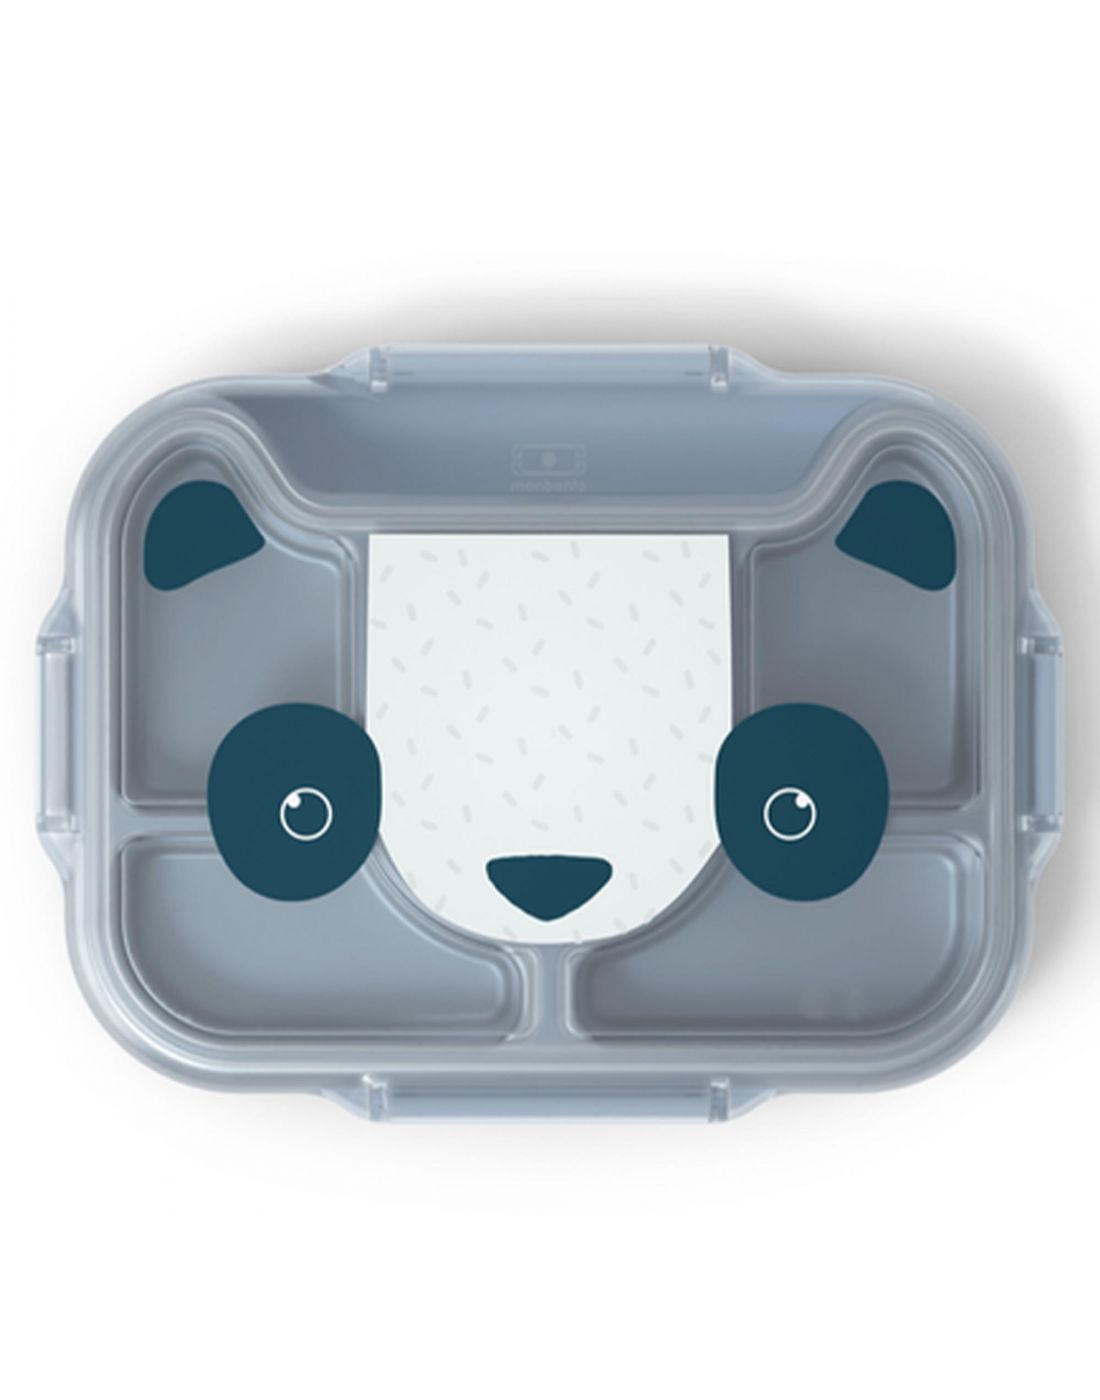 Παιδκός Δίσκος-Δοχείο Φαγητού με Χωρίσματα 950ml ΜΒ Wonder Blue Panda Monbento